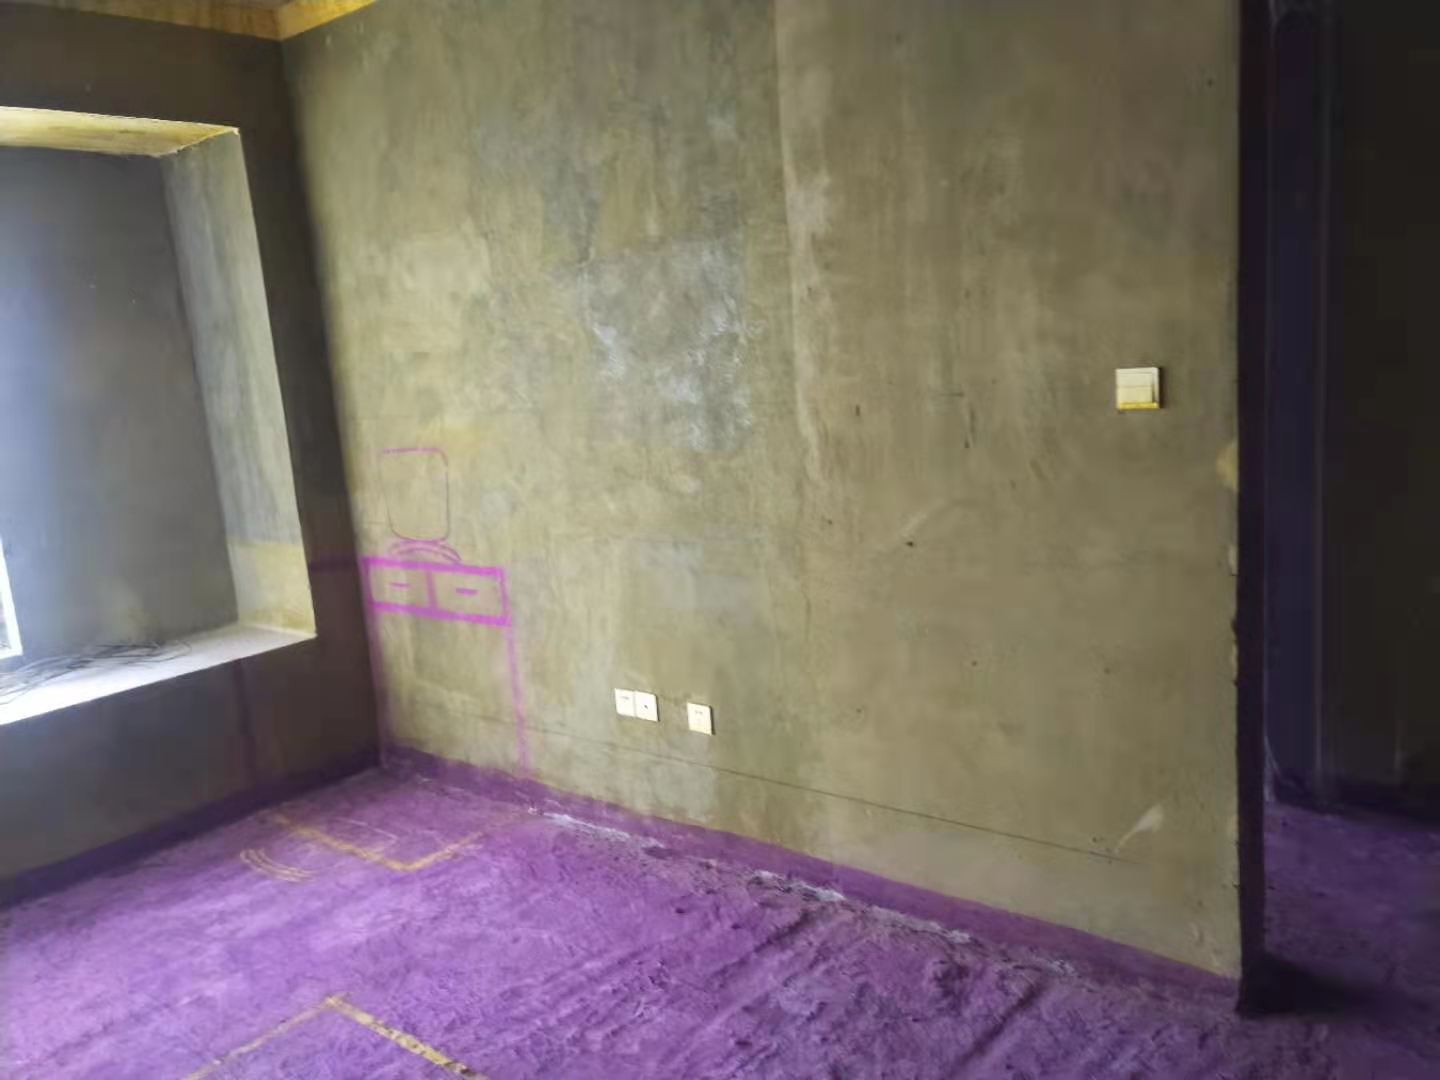 国贸天成-黄墙紫地/3D全景放样-山水装饰